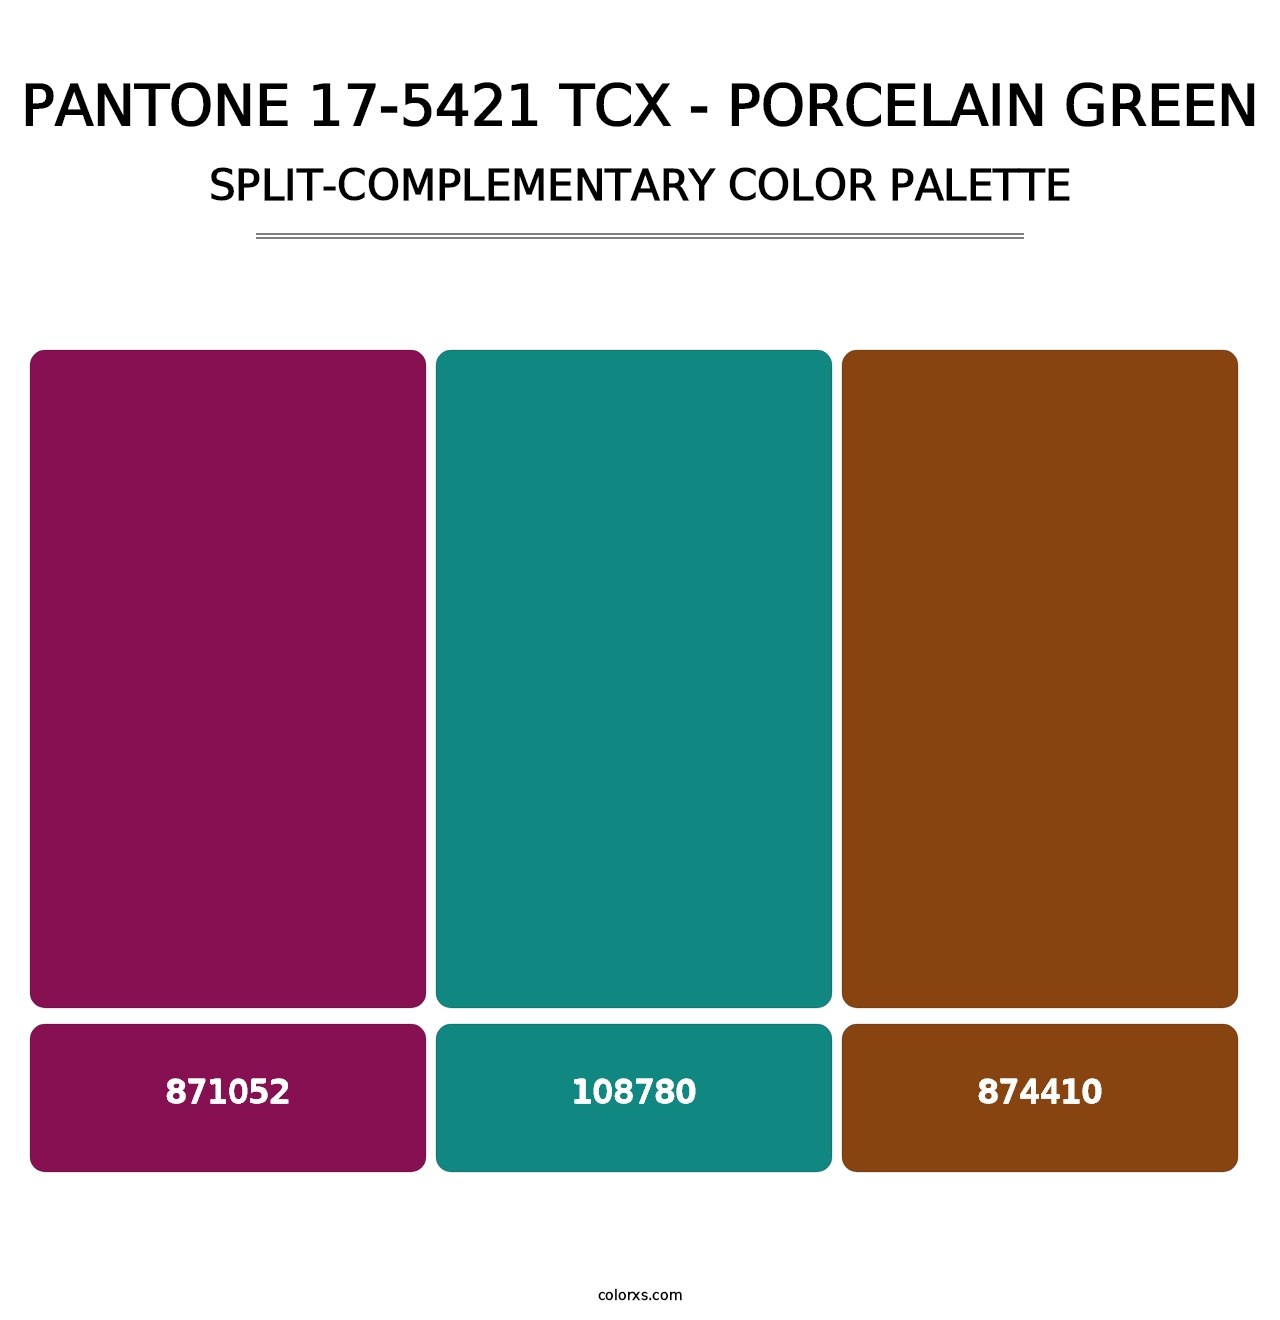 PANTONE 17-5421 TCX - Porcelain Green - Split-Complementary Color Palette